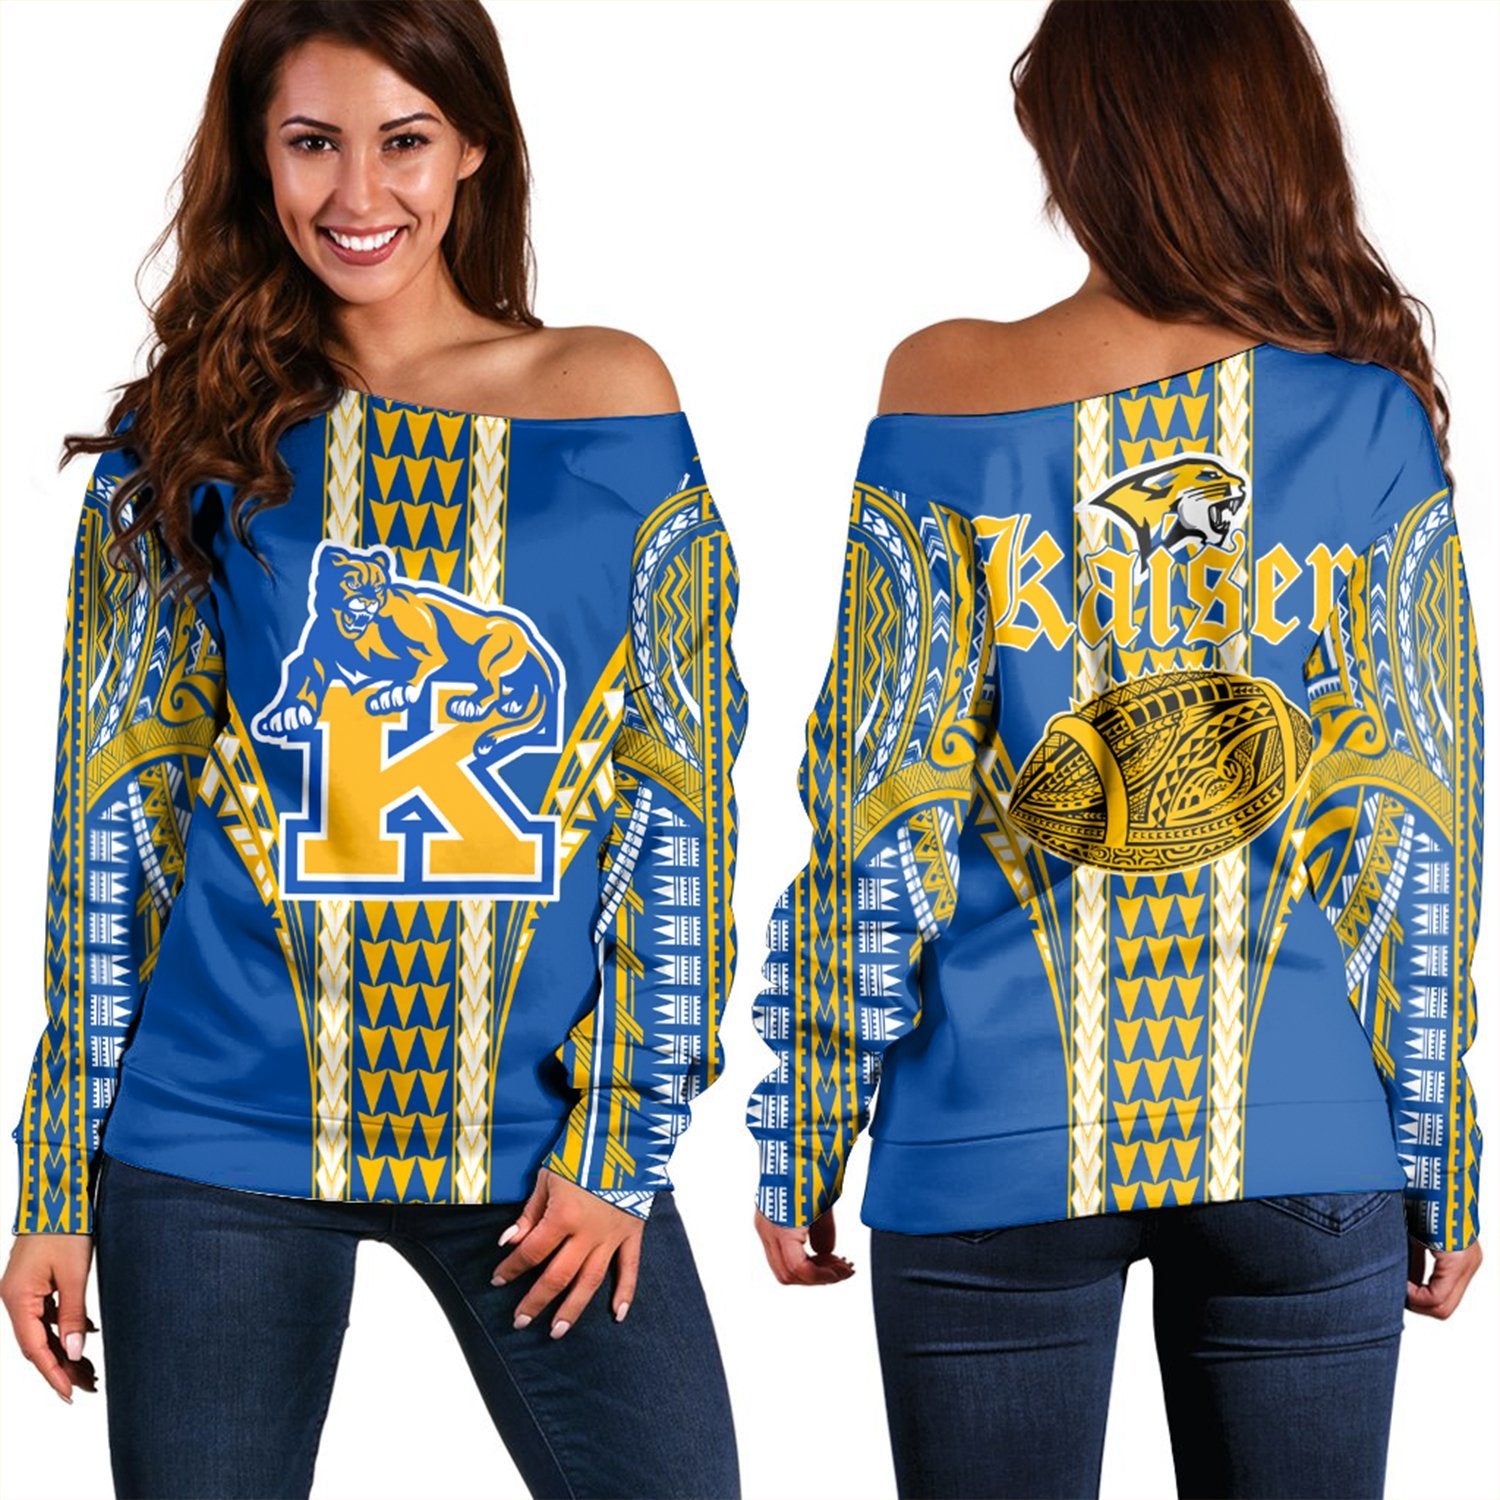 Hawaii - Kaiser High Football Jersey Women's Off Shoulder Sweater - AH Blue - Polynesian Pride